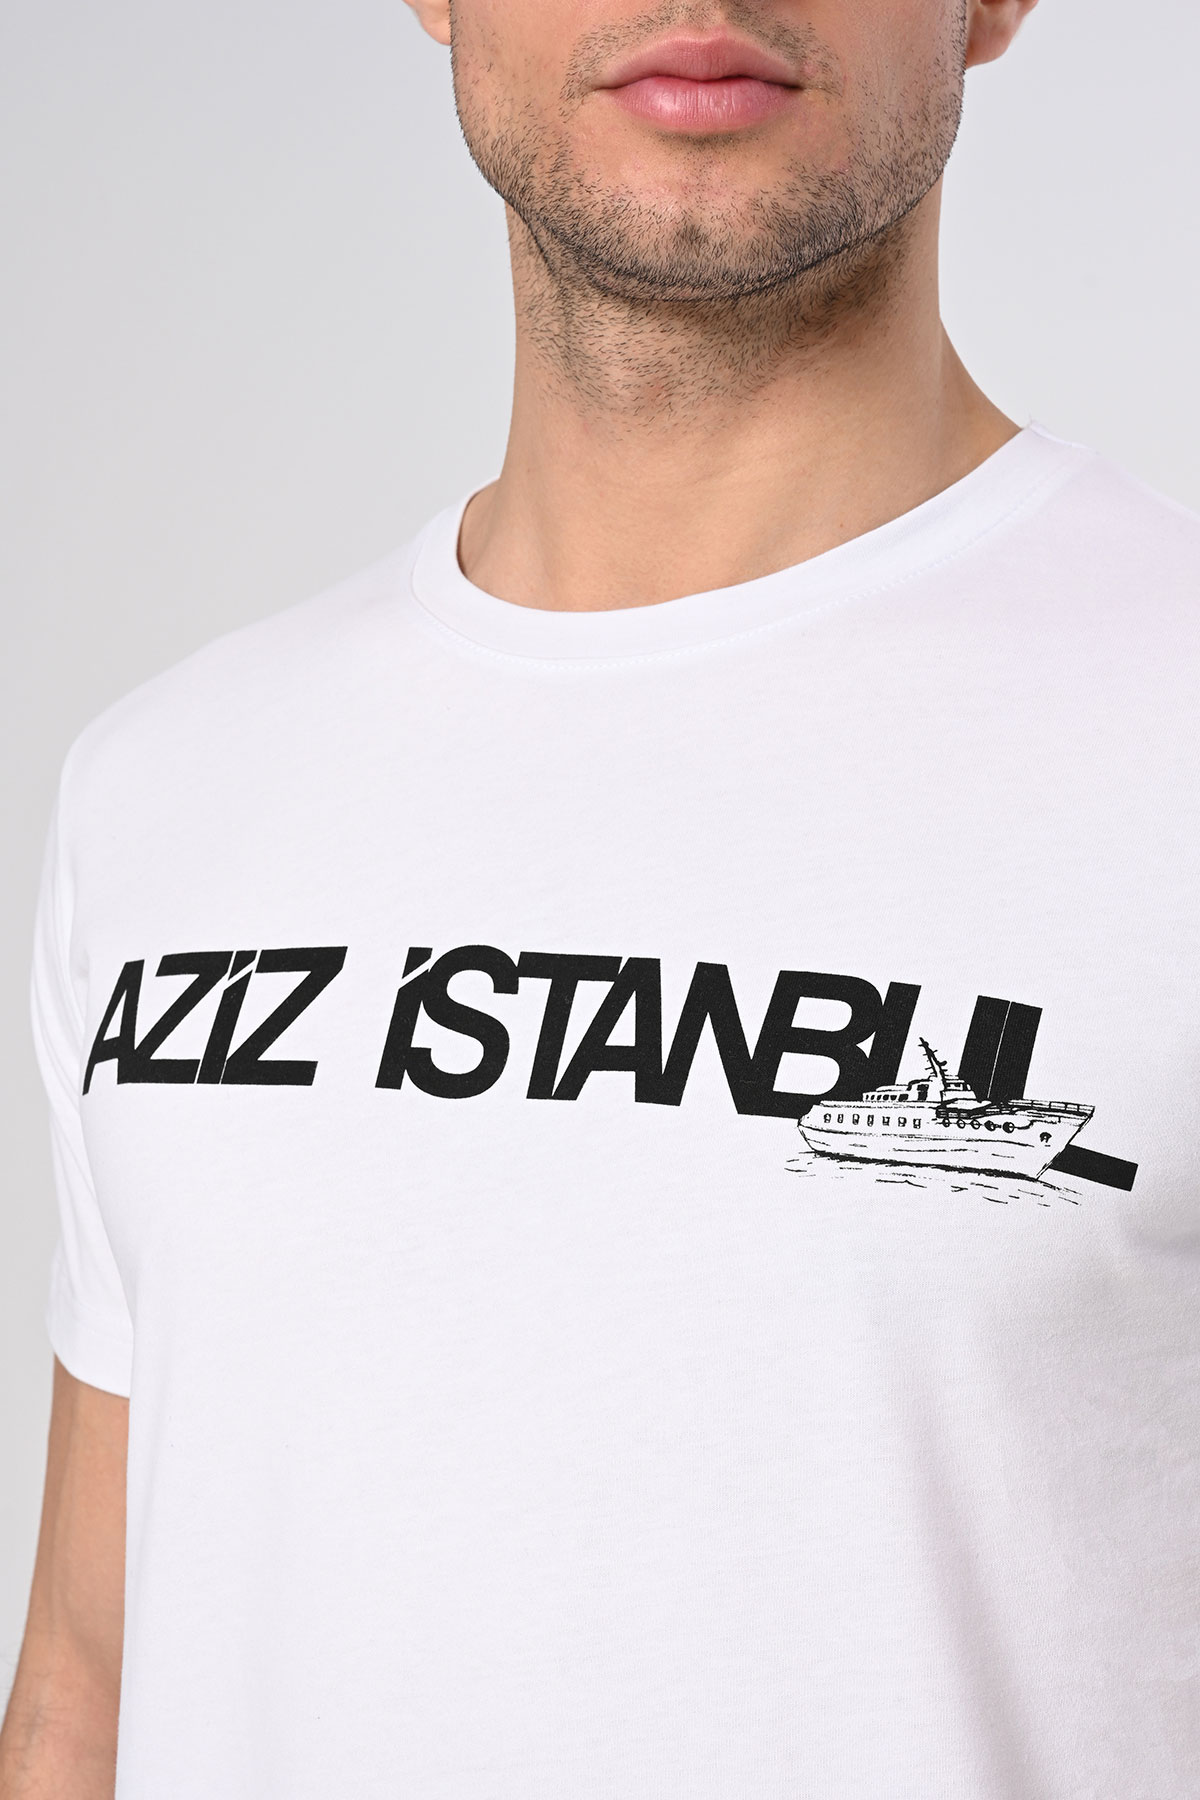 Aziz İstanbul Tasarım Pamuk Bisiklet Yaka Beyaz T-shirt 22’